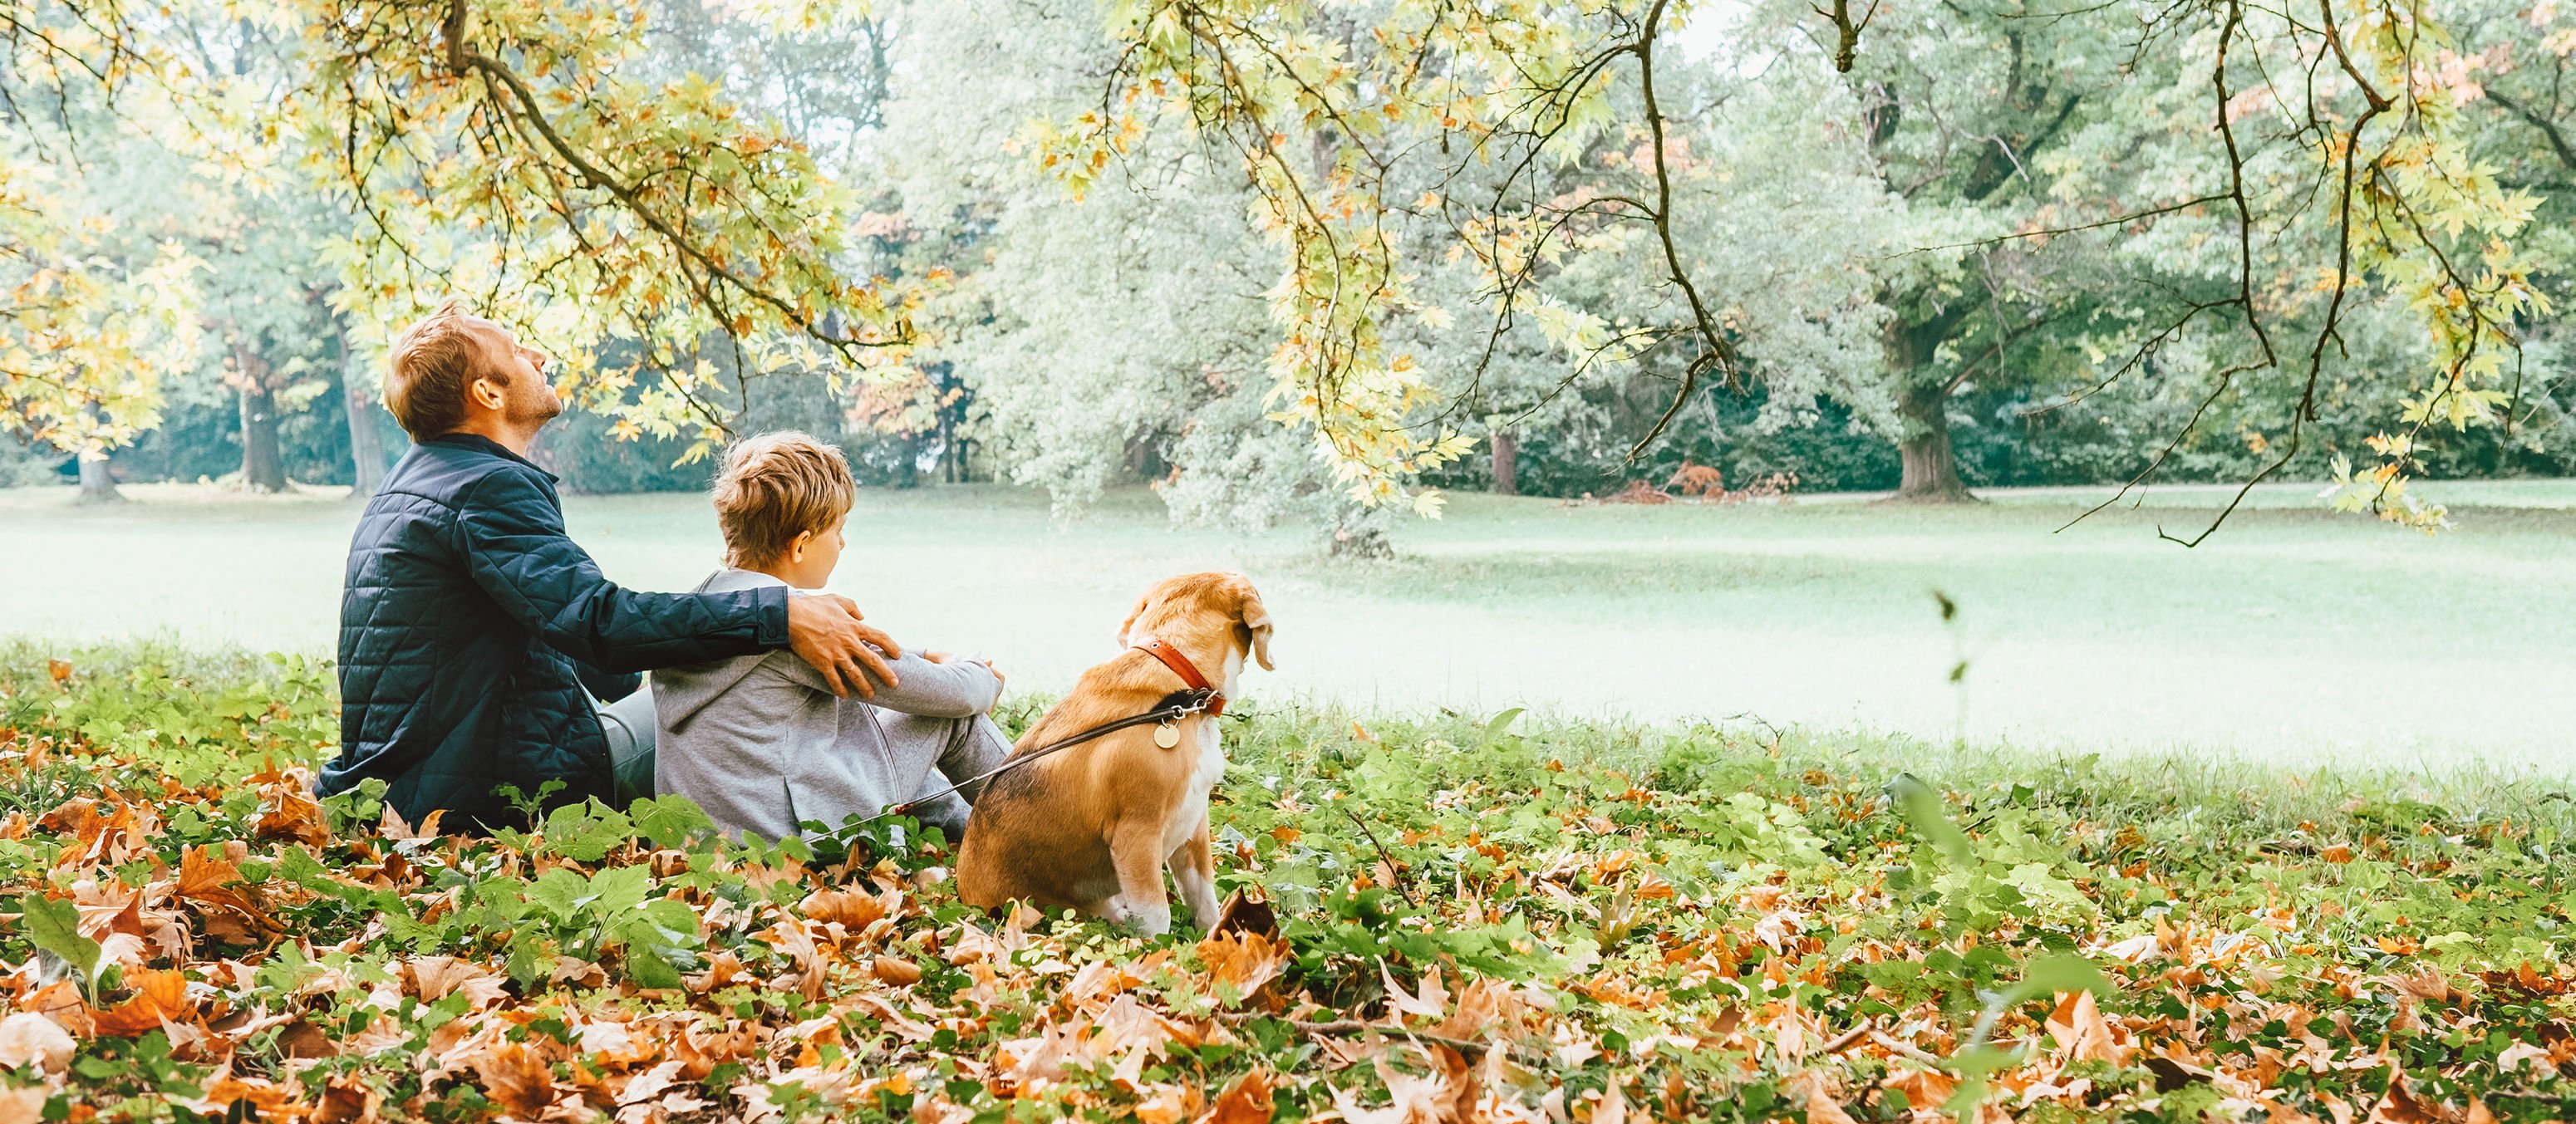 Homem com menino e cachorro sentados em grama cheia de folhas secas, olhando para um rio em sua frente.